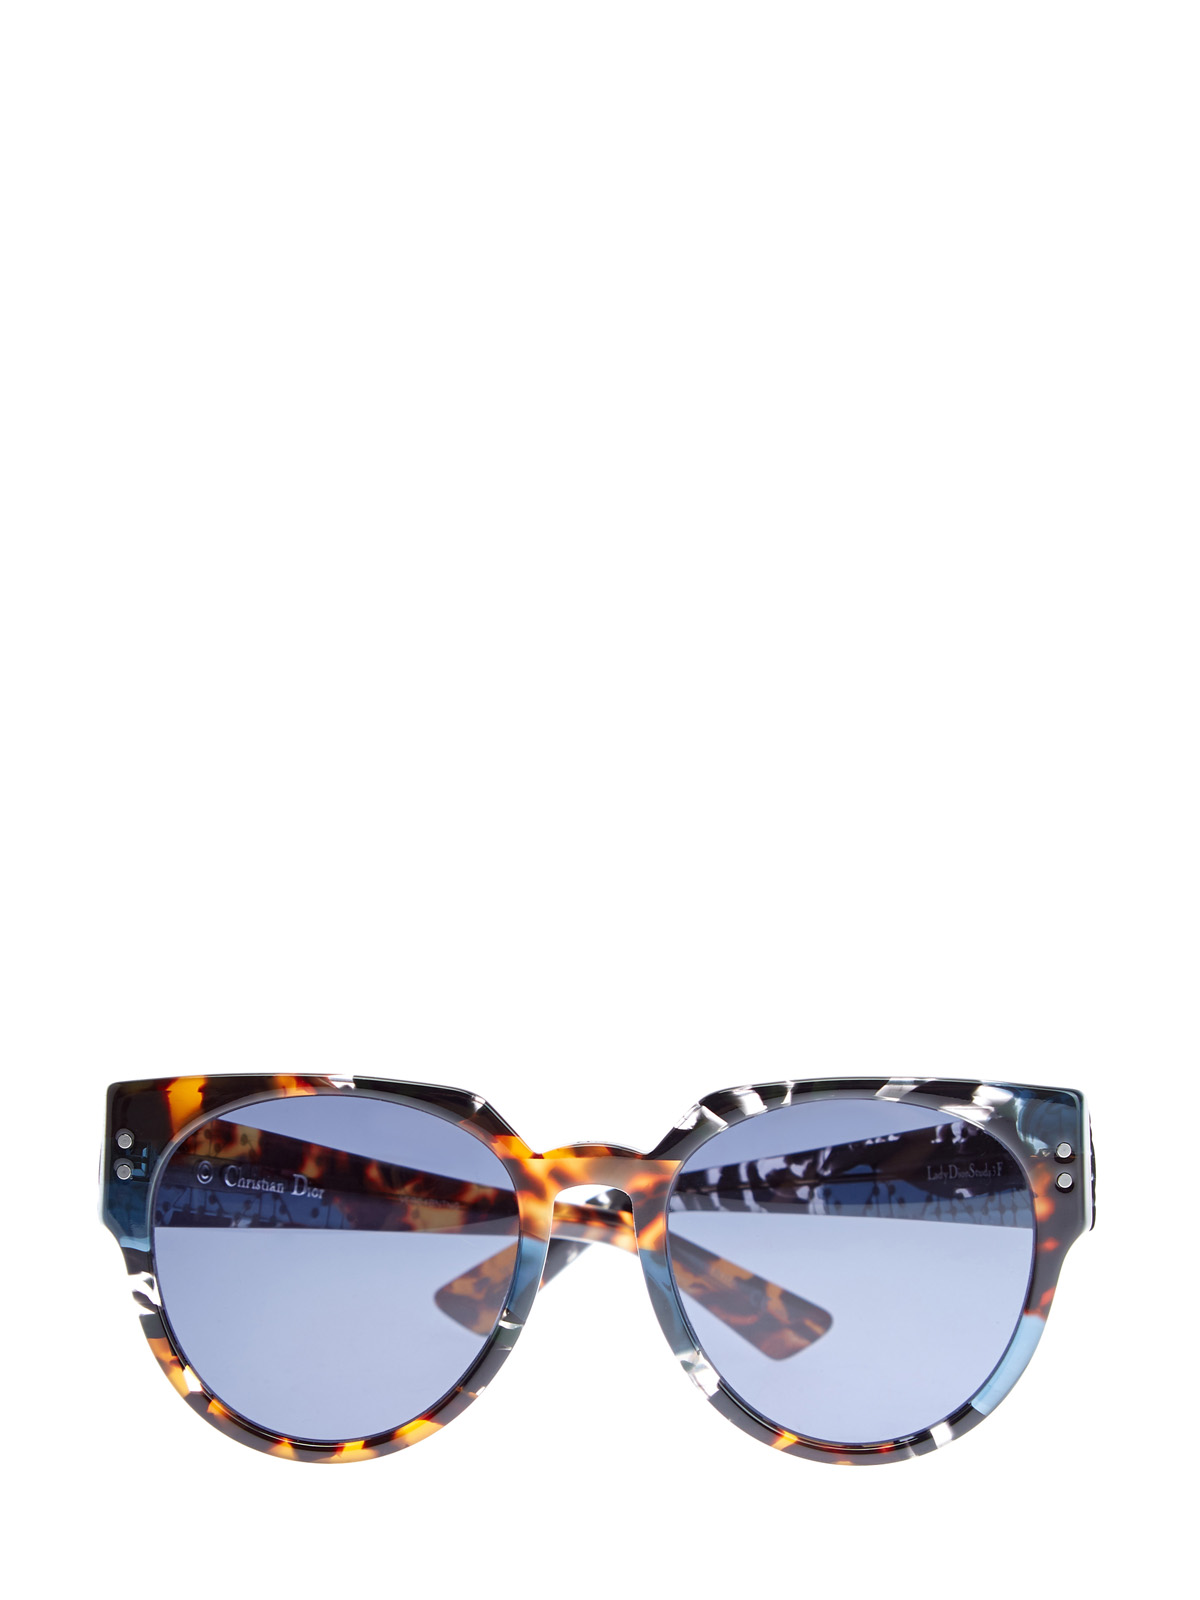 Очки LadyDiorStuds3 со стеганым узором на дужках DIOR (sunglasses) women, цвет мульти, размер S;M;L